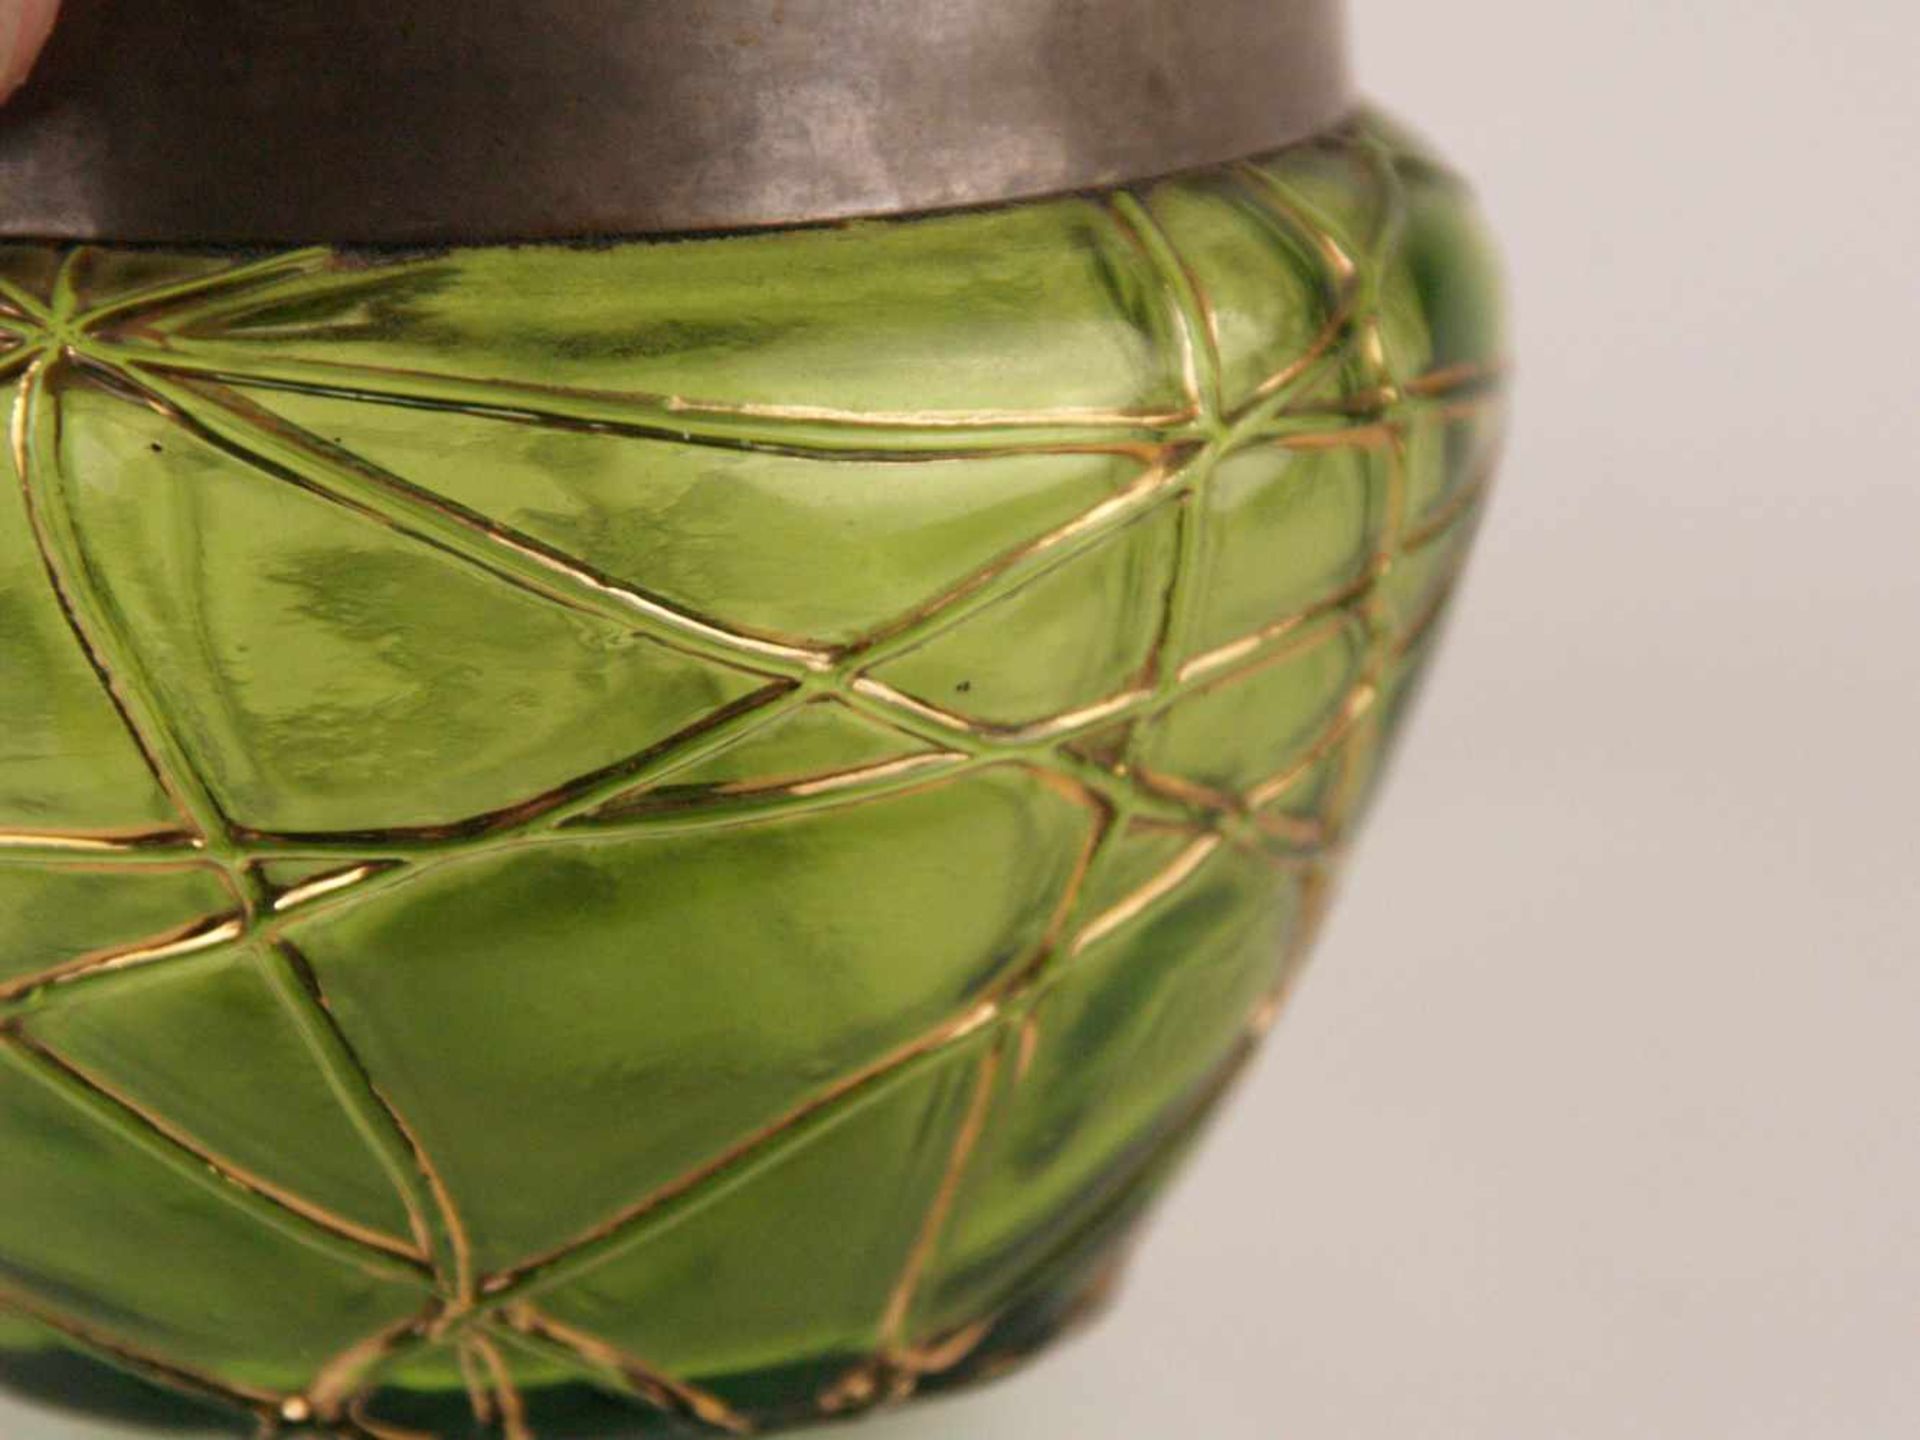 Jugendstil-Vase - Palme & König, grünes Glas mit Fadenauflage, ausgestellte gedrungene Form mit - Bild 2 aus 3